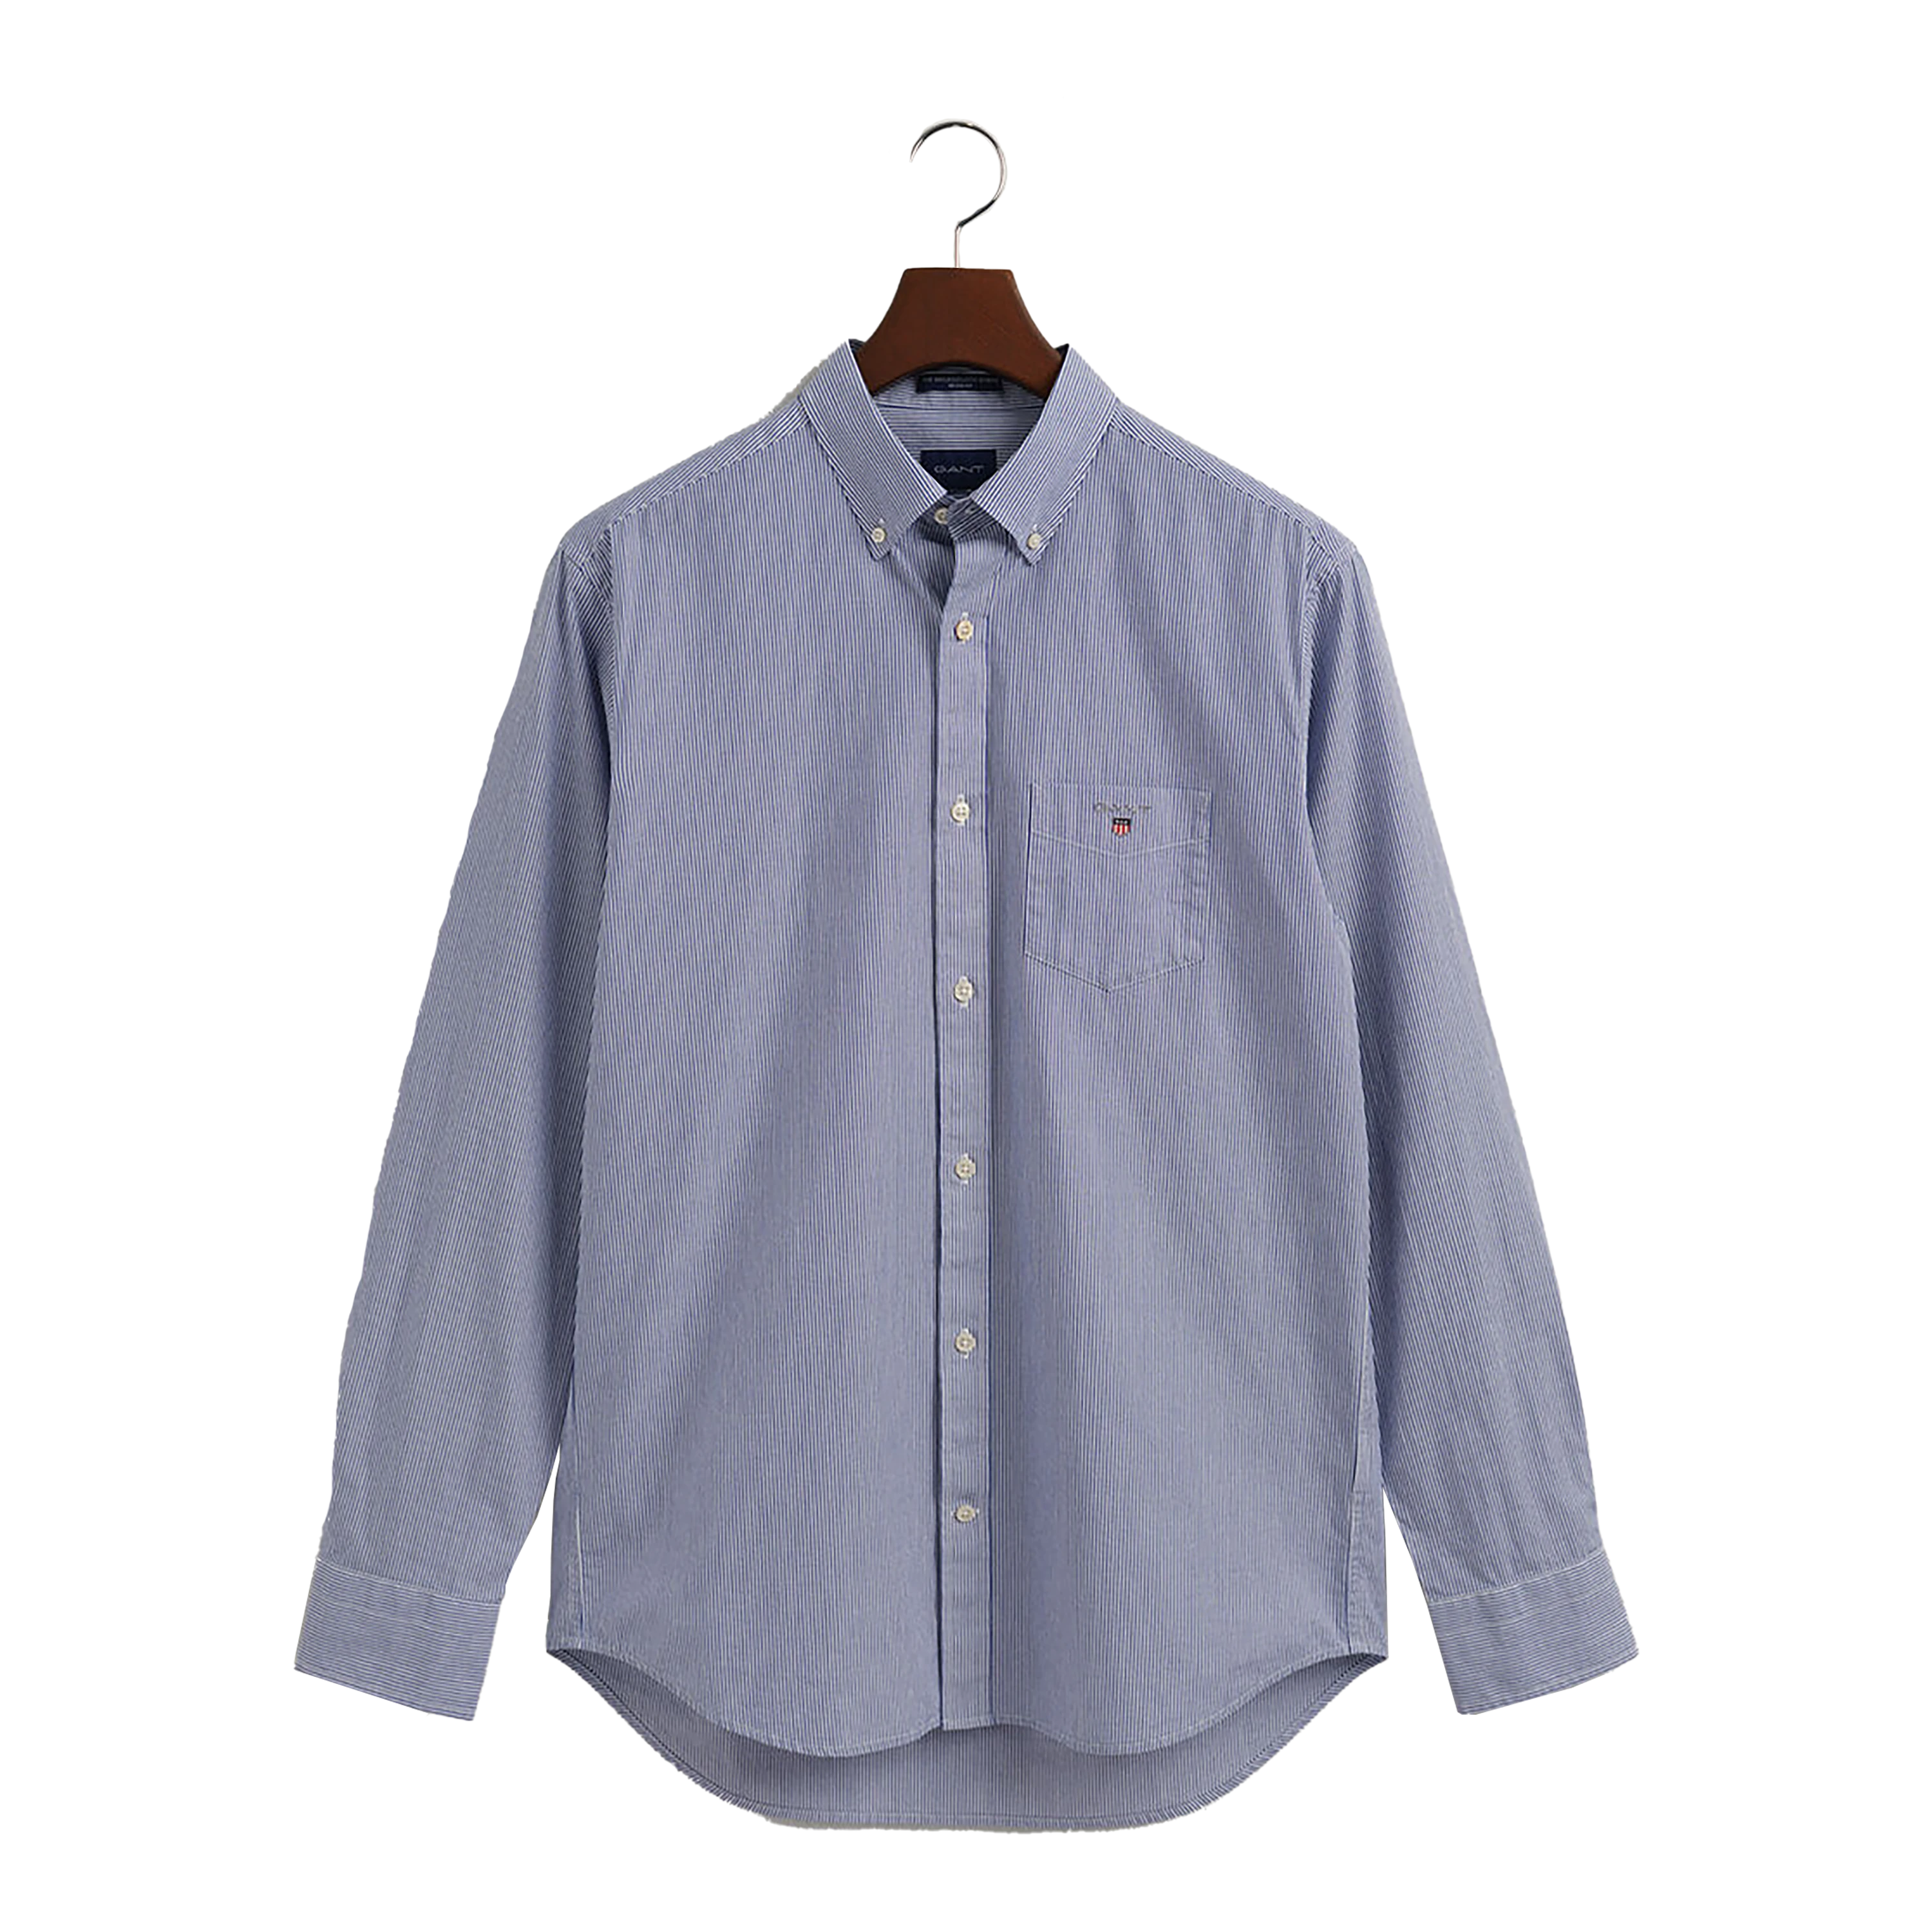 GANT Broadcloth Banker Stripe Long Sleeve Shirt for Men